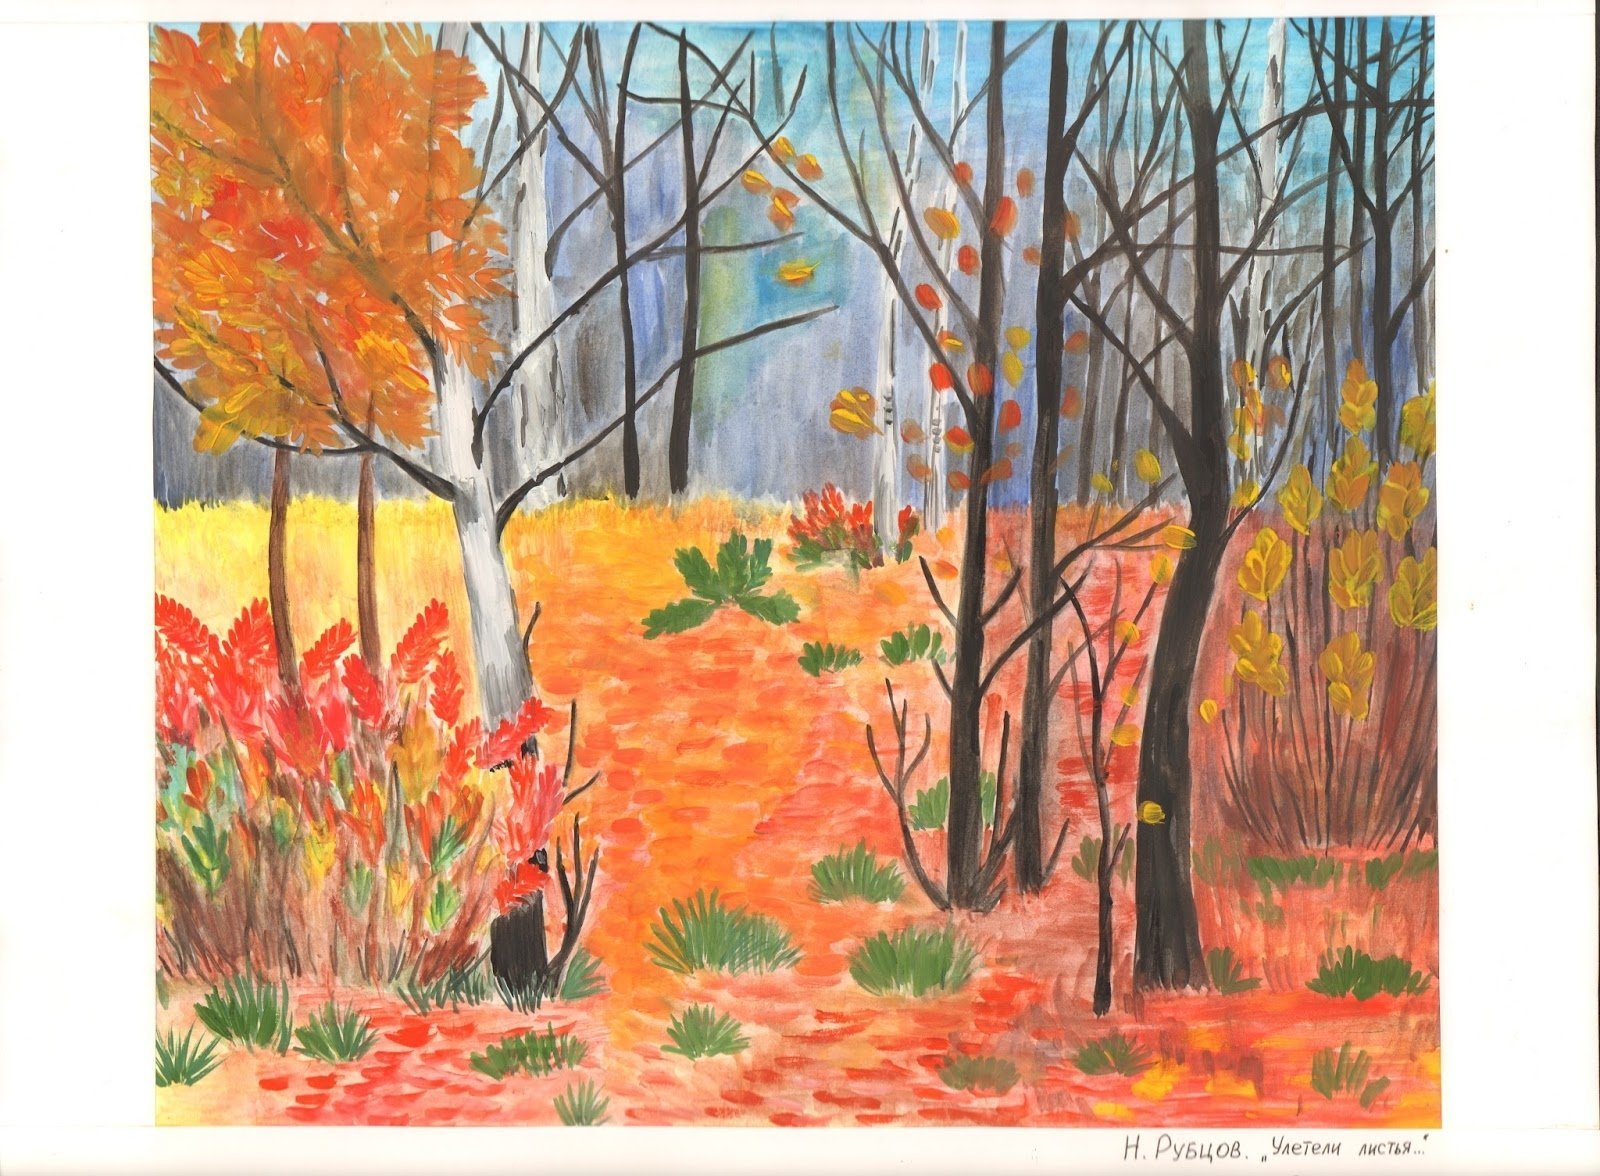 Стихотворение николая рубцова сентябрь. Иллюстрация к стихотворению Рубцова в осеннем лесу.